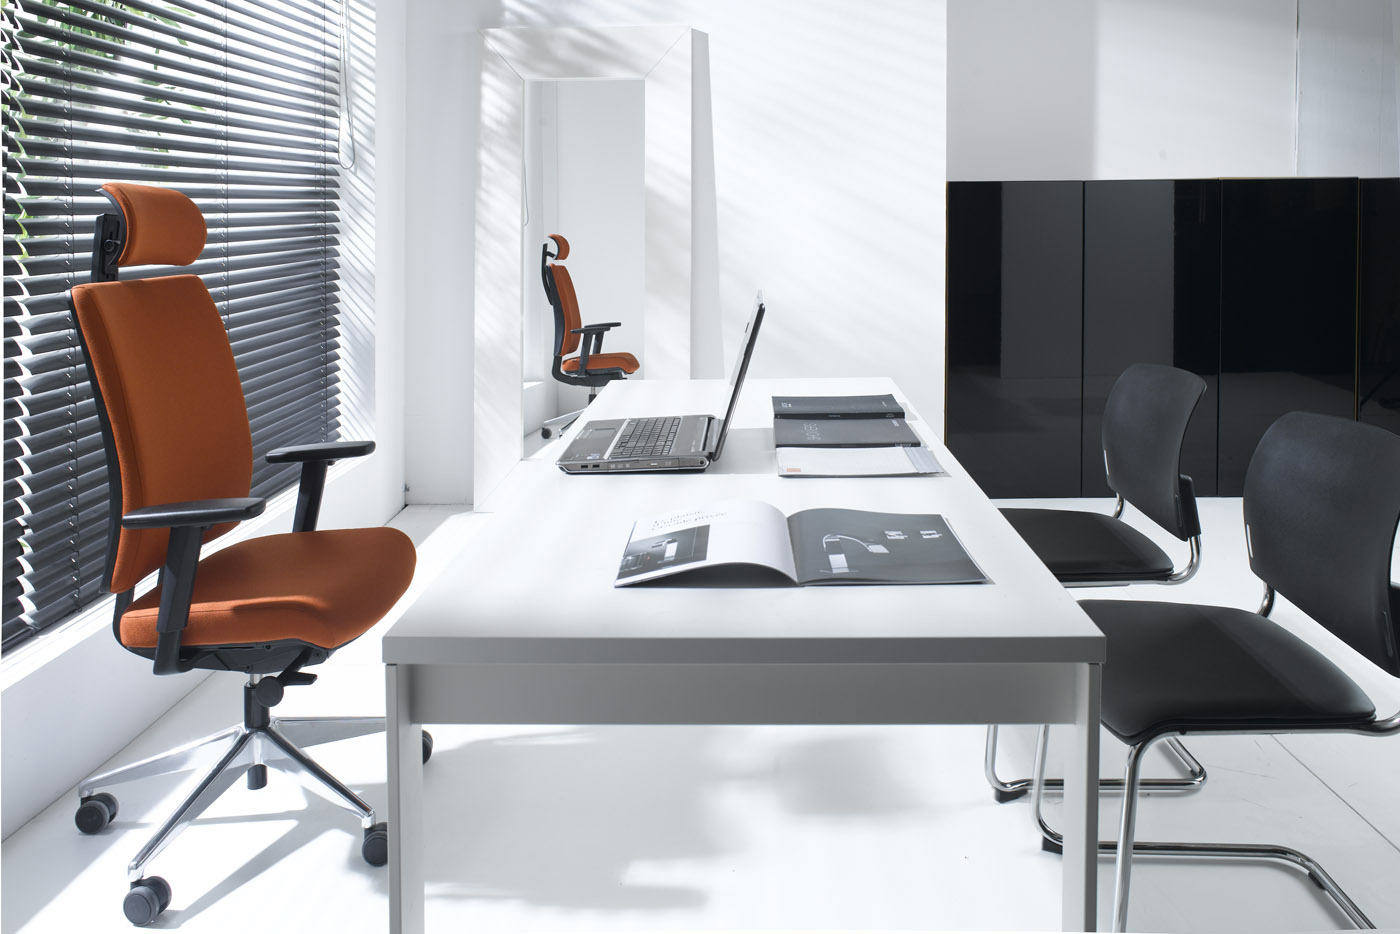 Bit - krzesła konferencyjne i biurowe, producent: Profim, dystrybutor: Vipservice, krzesła konferencyjne, krzesła biurowe, konferencje, biura